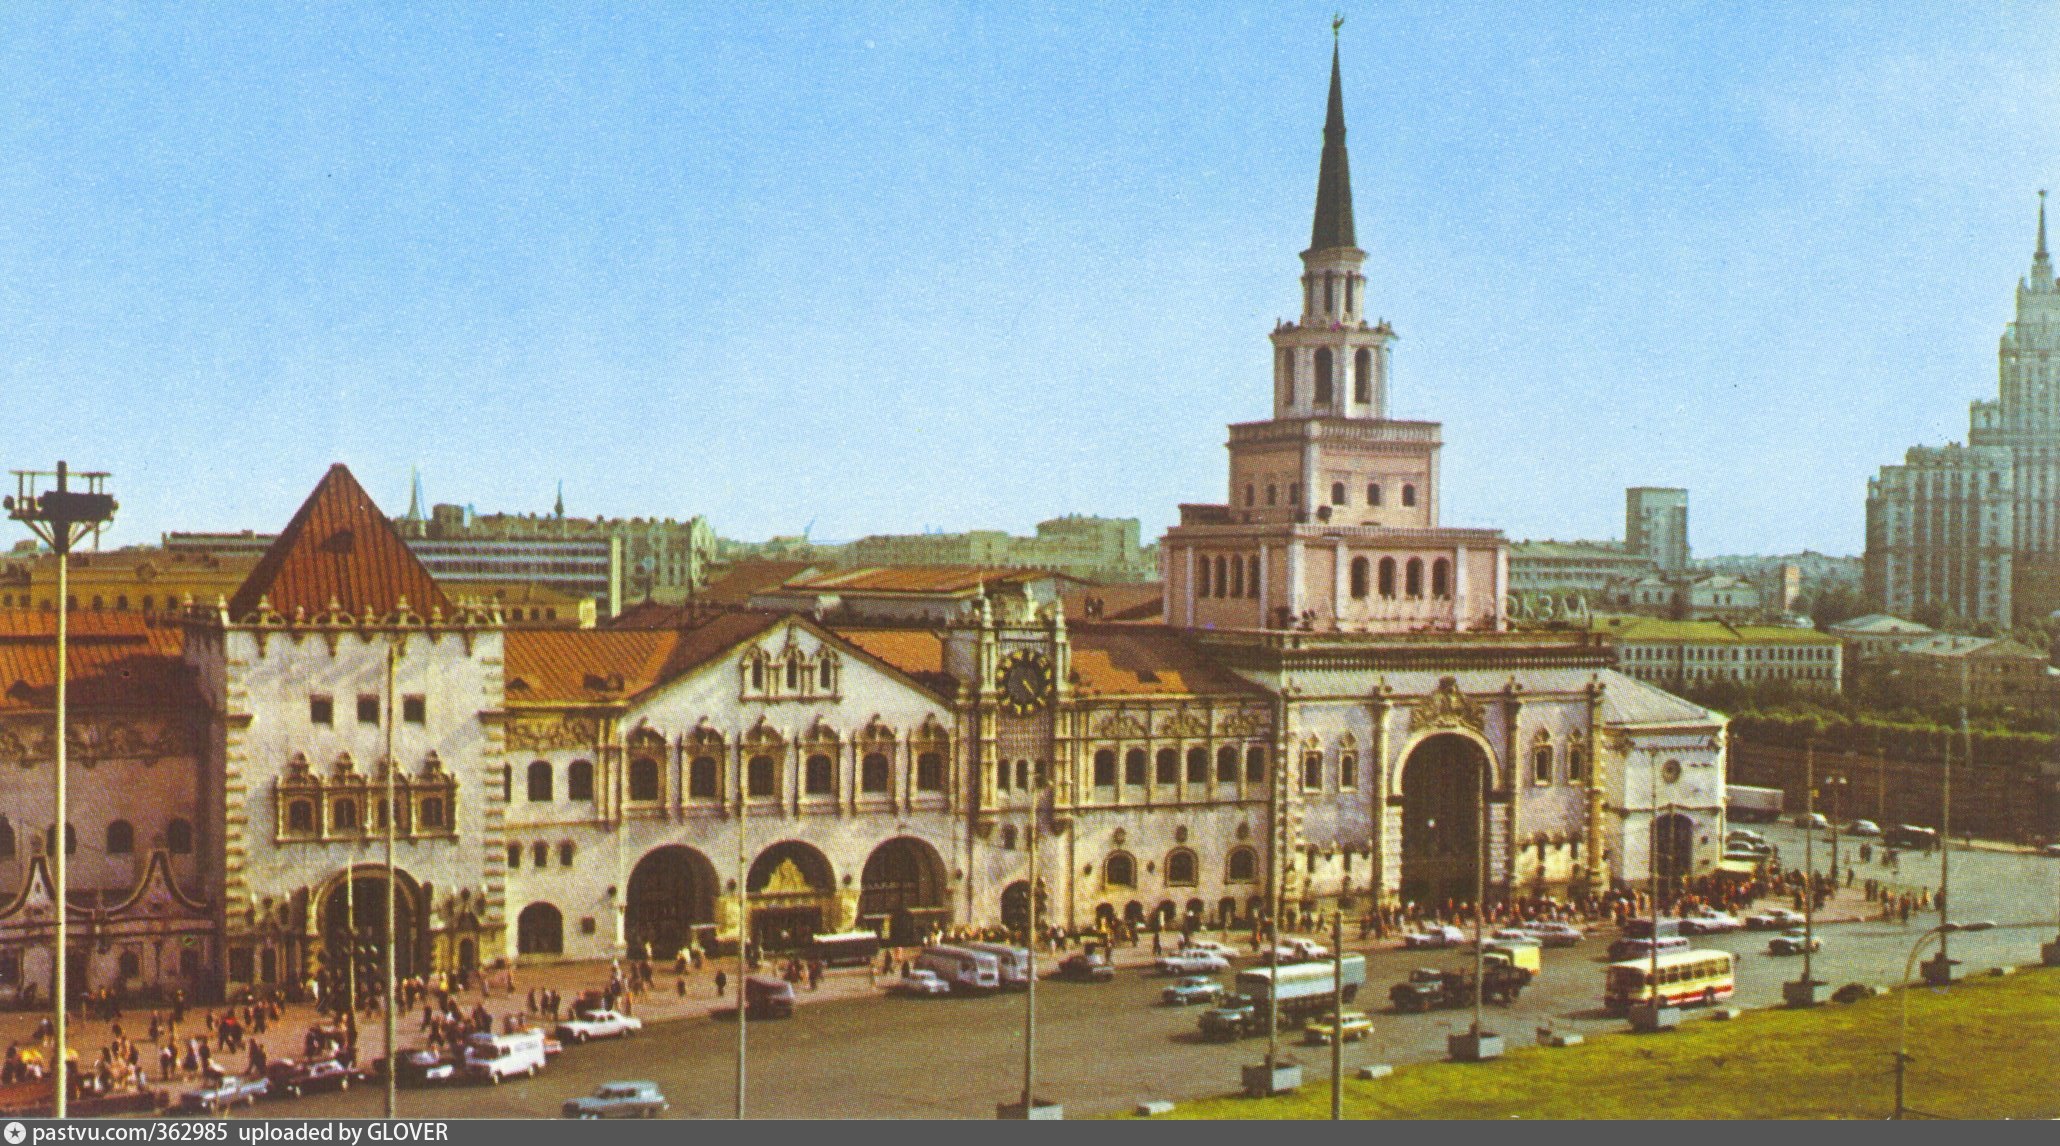 московский казанский вокзал